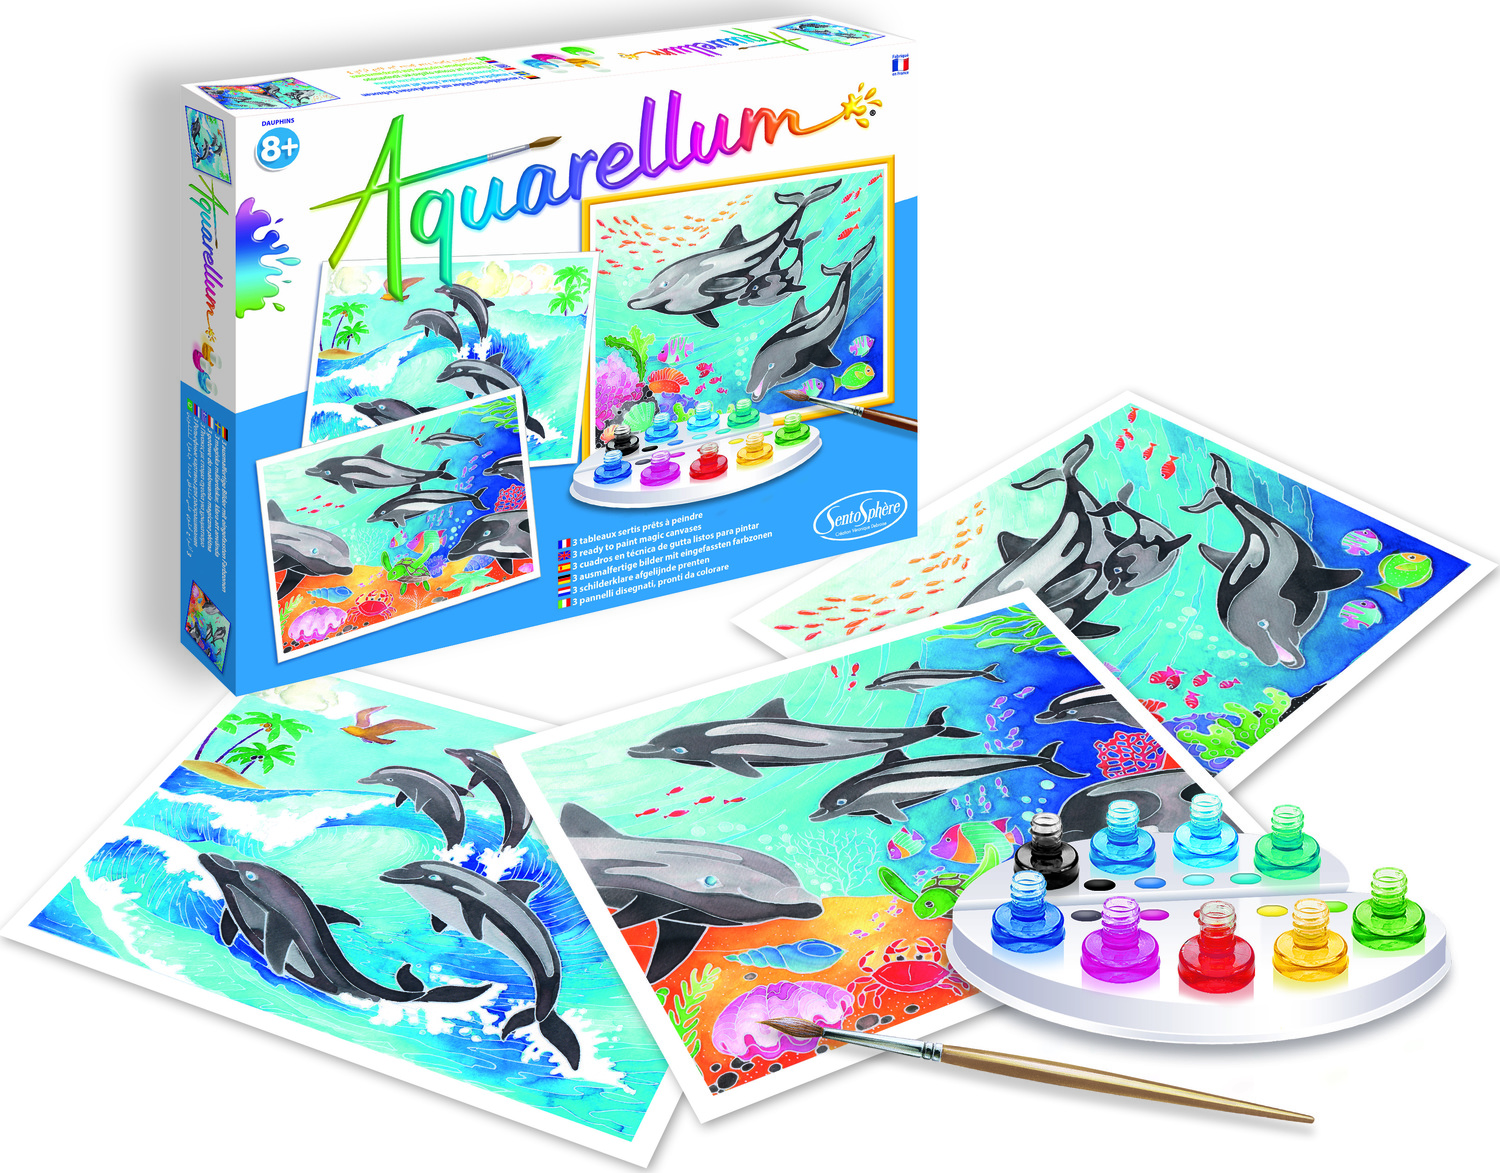 Aquarellum Junior - Dragons - Imagination Toys